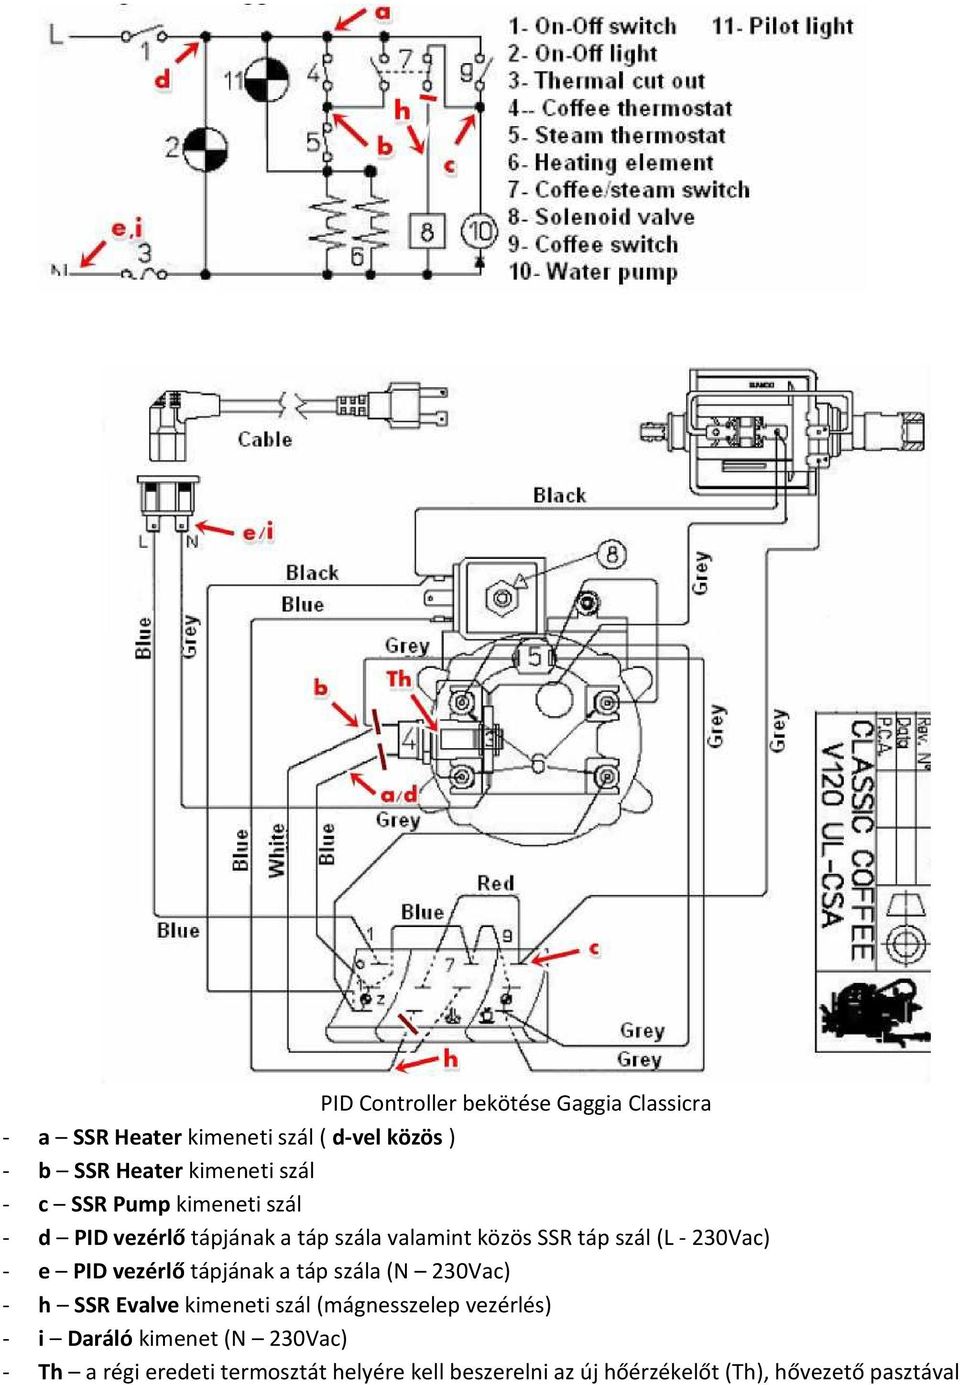 e PID vezérlő tápjának a táp szála (N 230Vac) - h SSR Evalve kimeneti szál (mágnesszelep vezérlés) - i Daráló